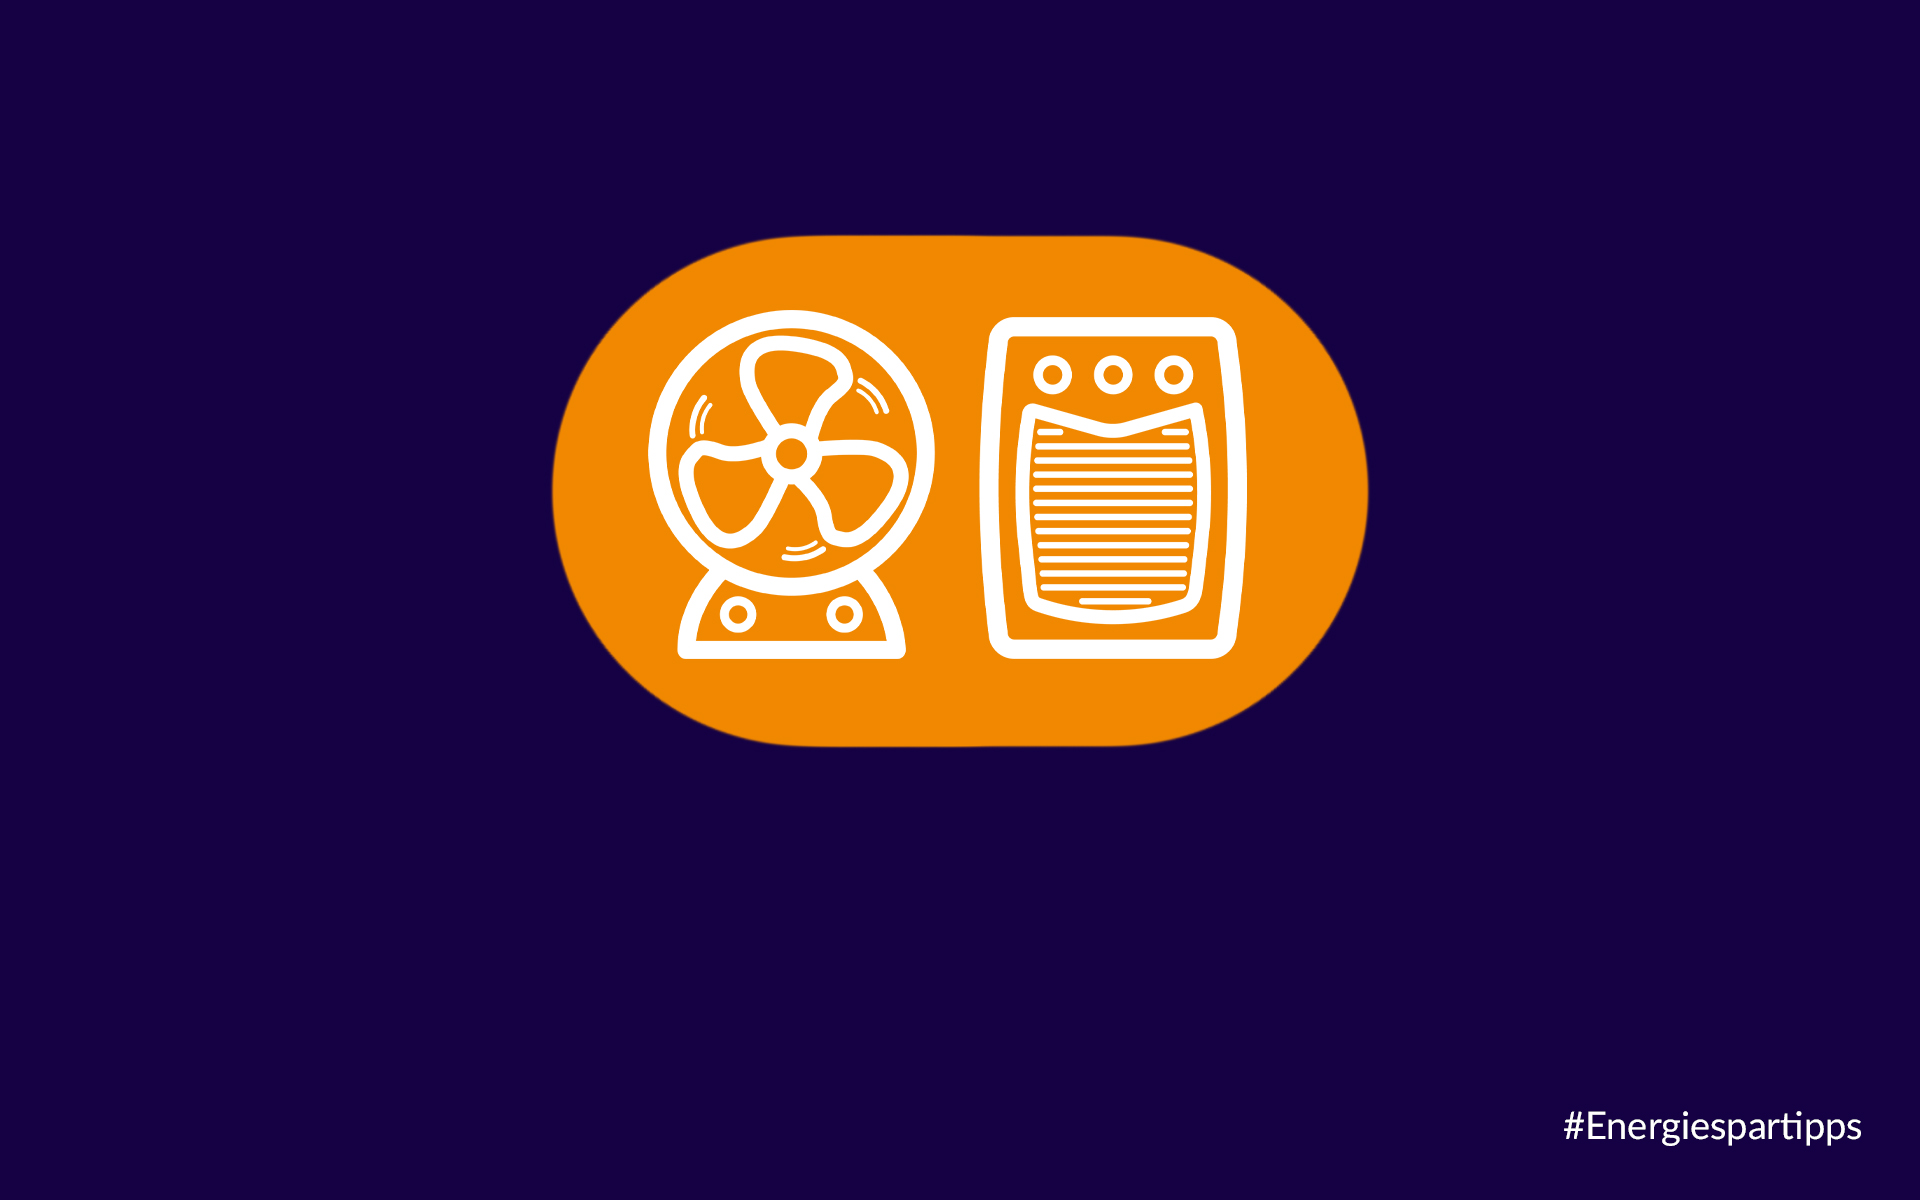 Piktogramm eines Ventilators und Heizlüfters in den Farben weiß, orange und dunkelblau.